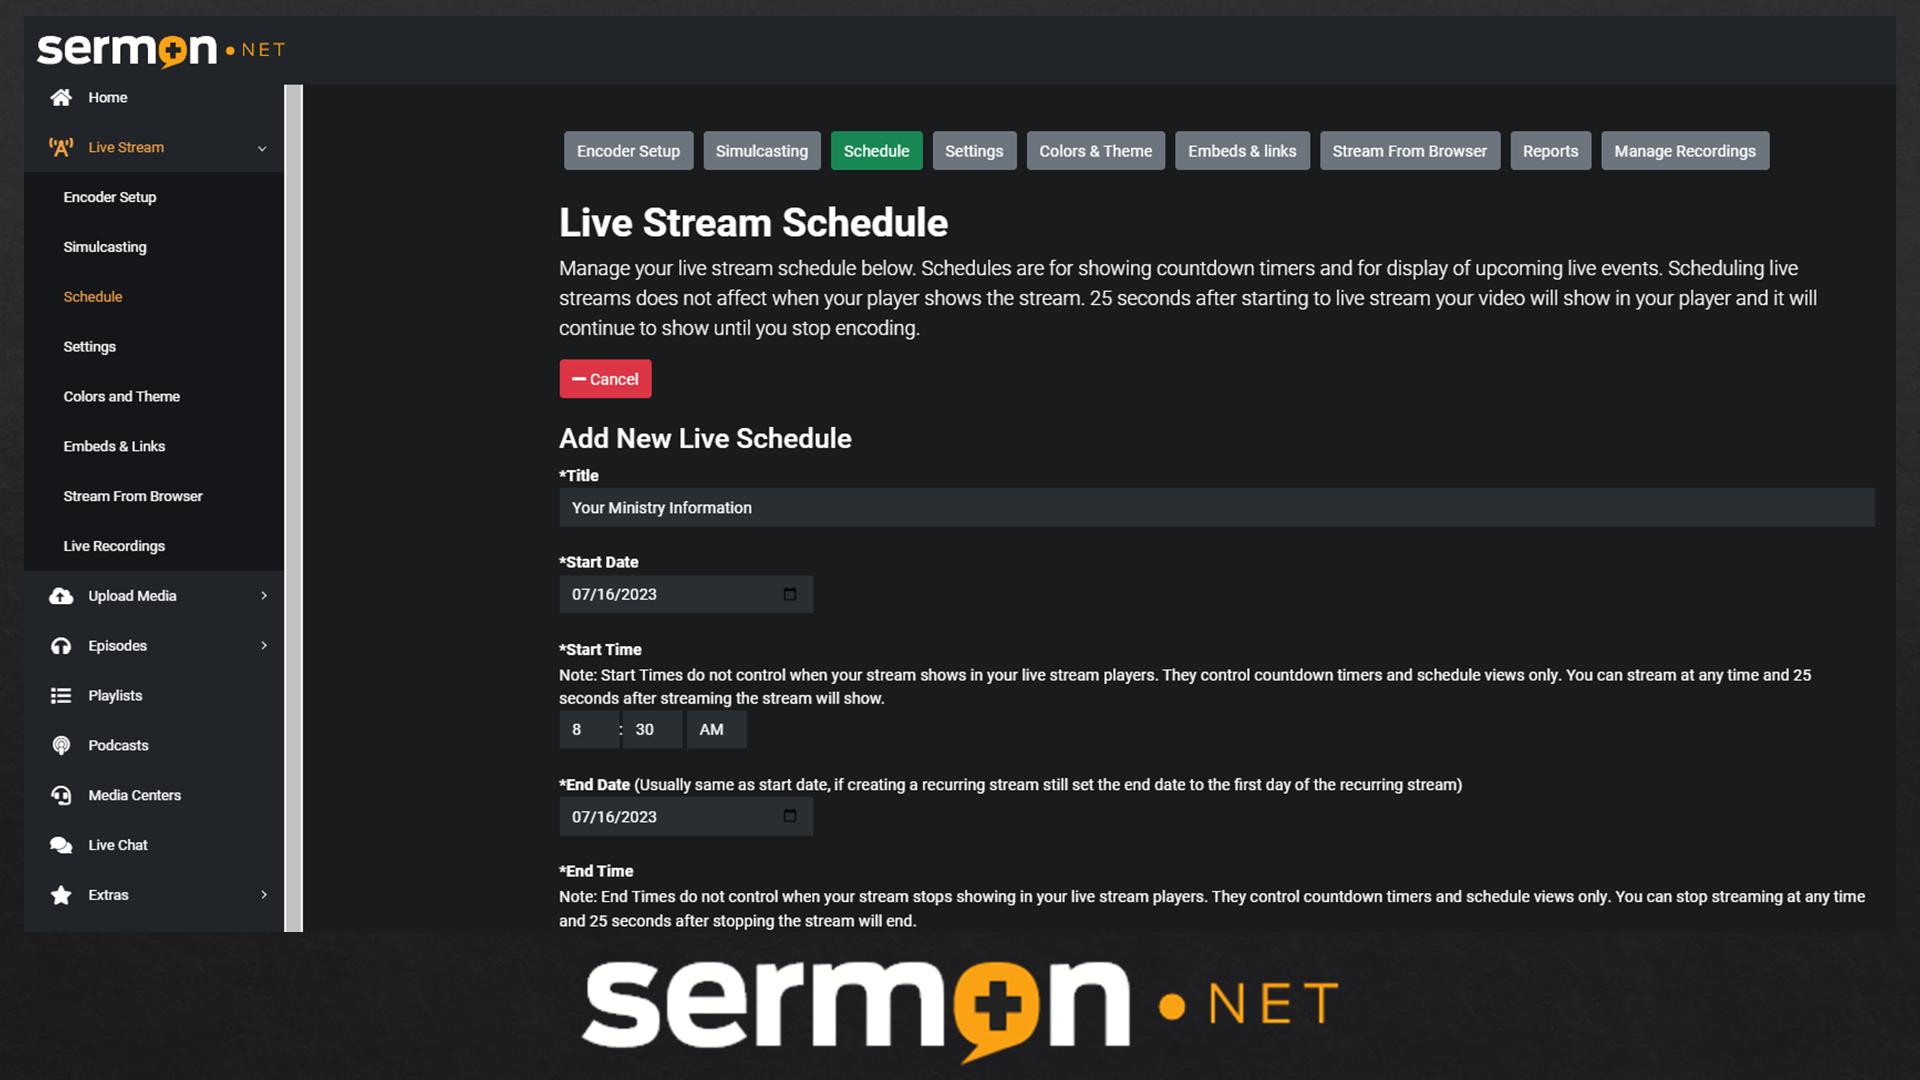 sermon.net live schedule